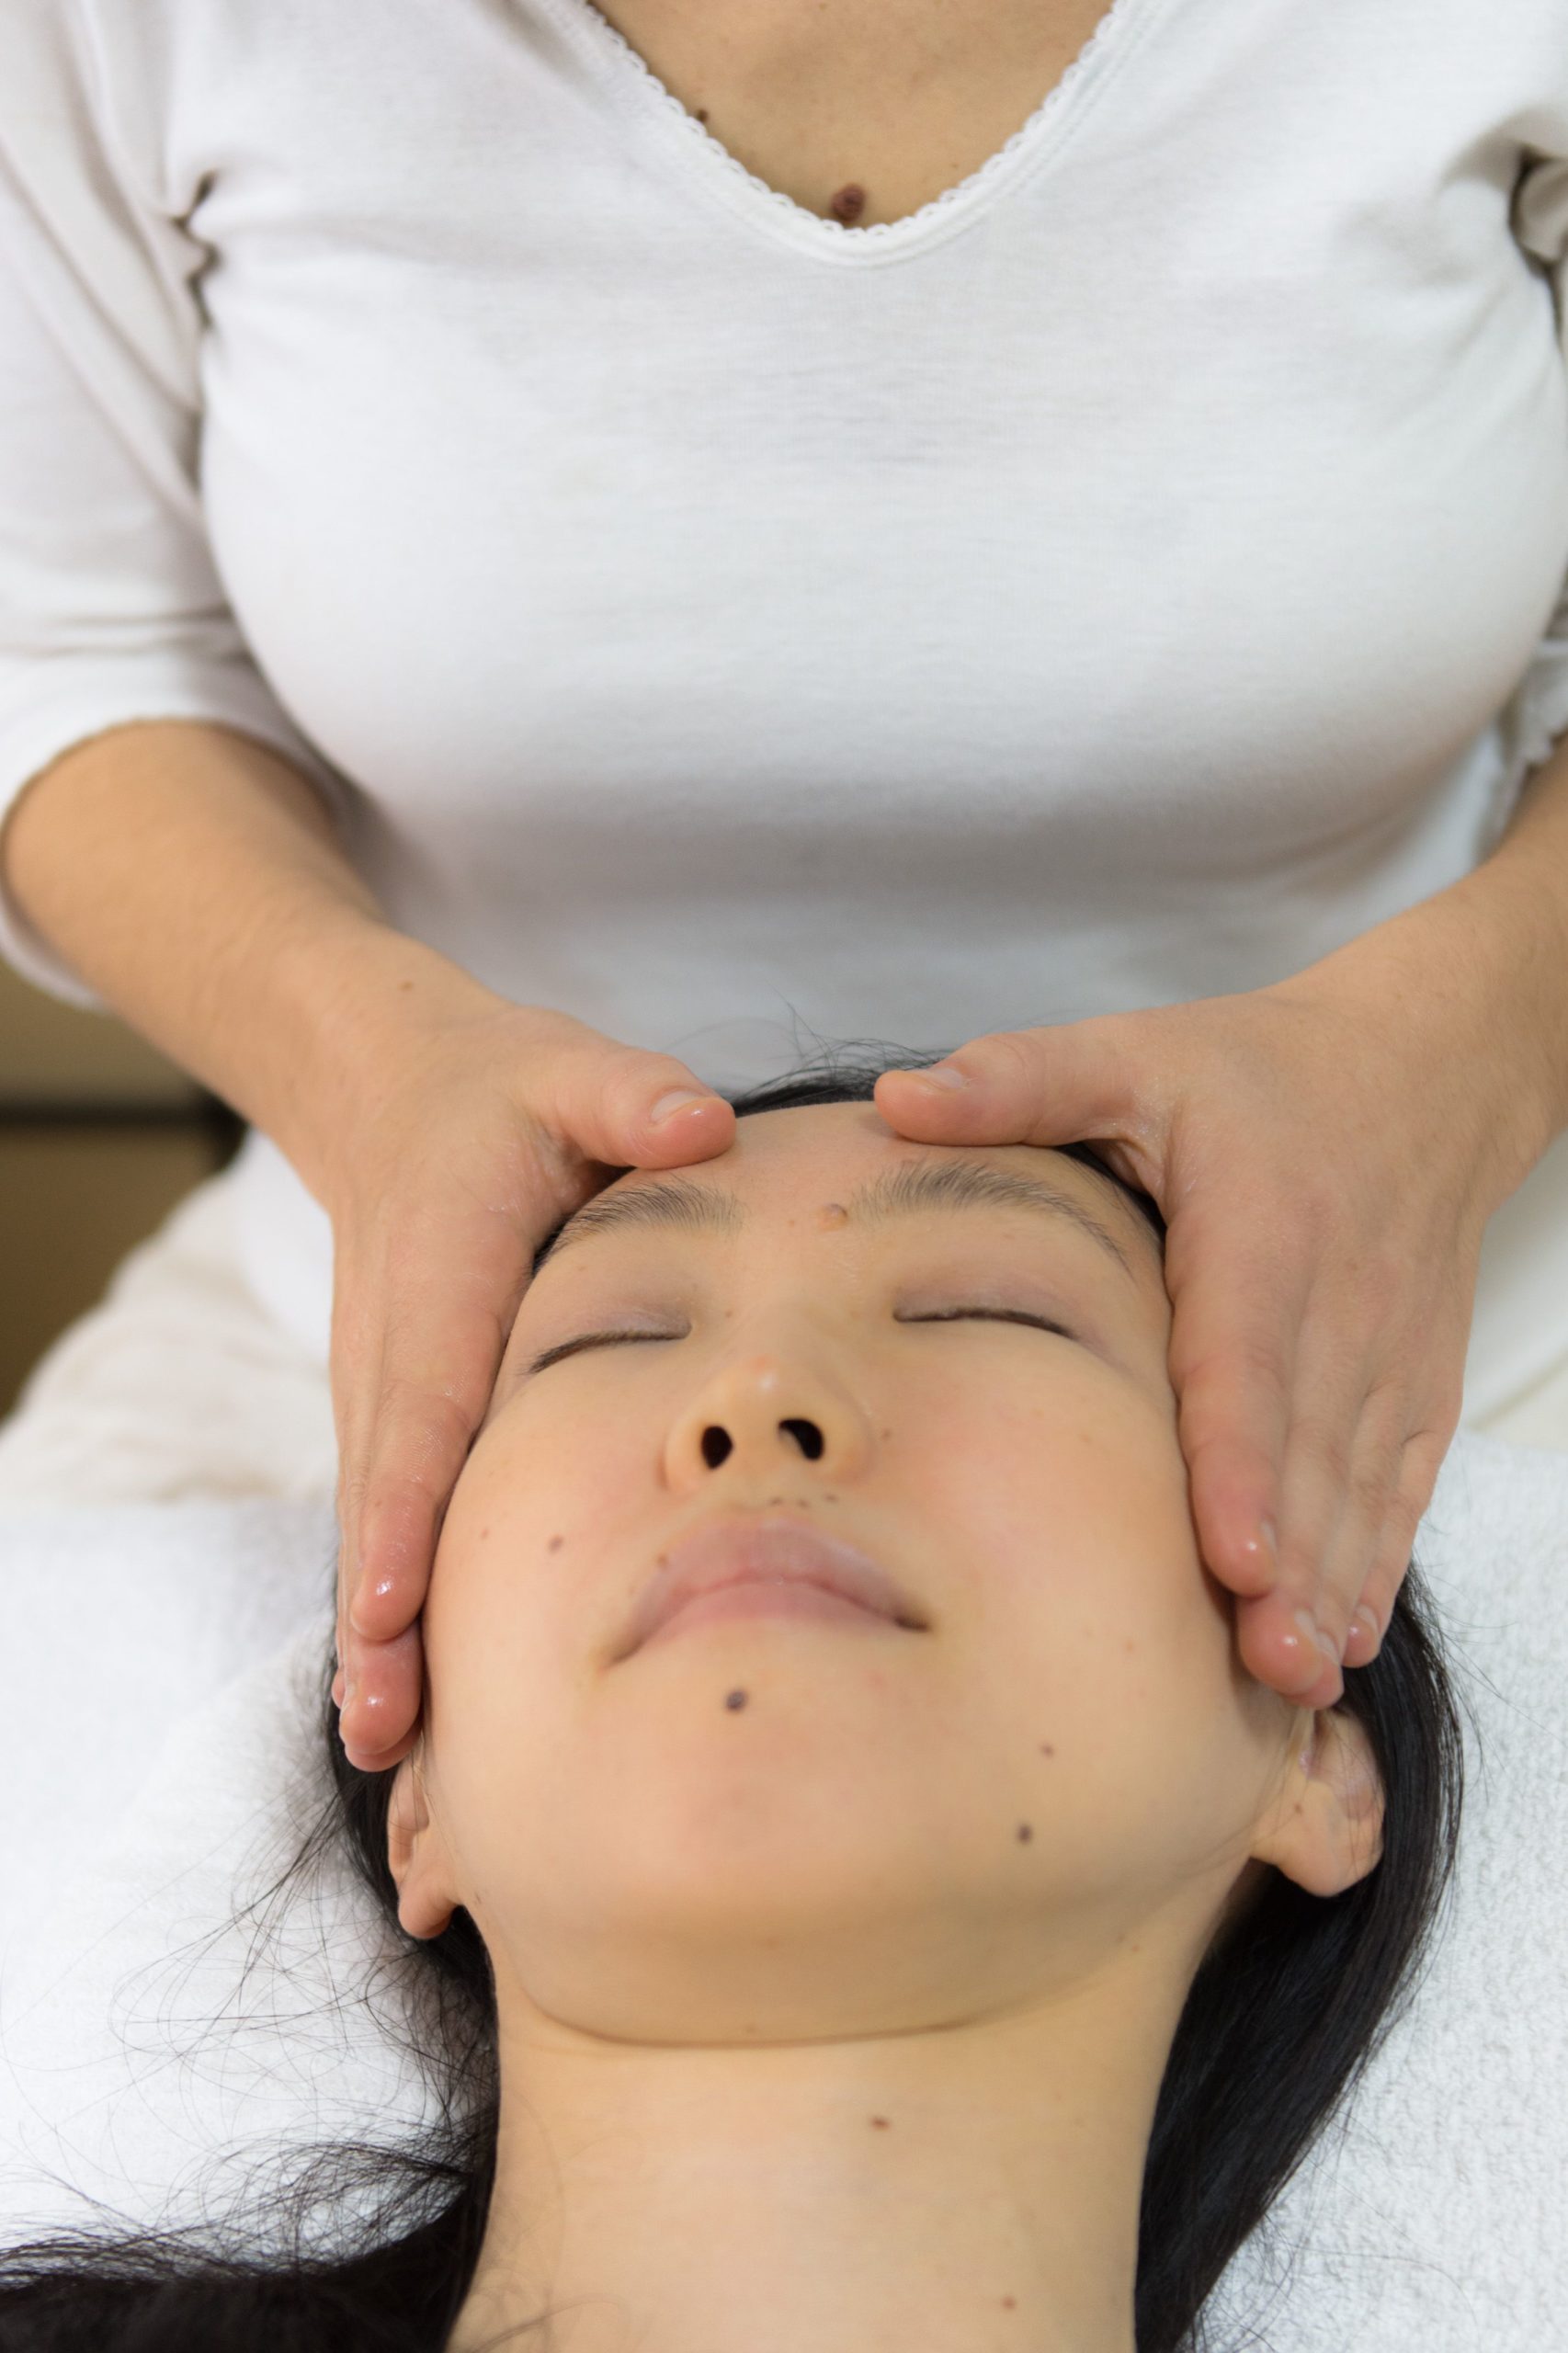 Shiatsu massage Tokyo - English friendly massage therapist